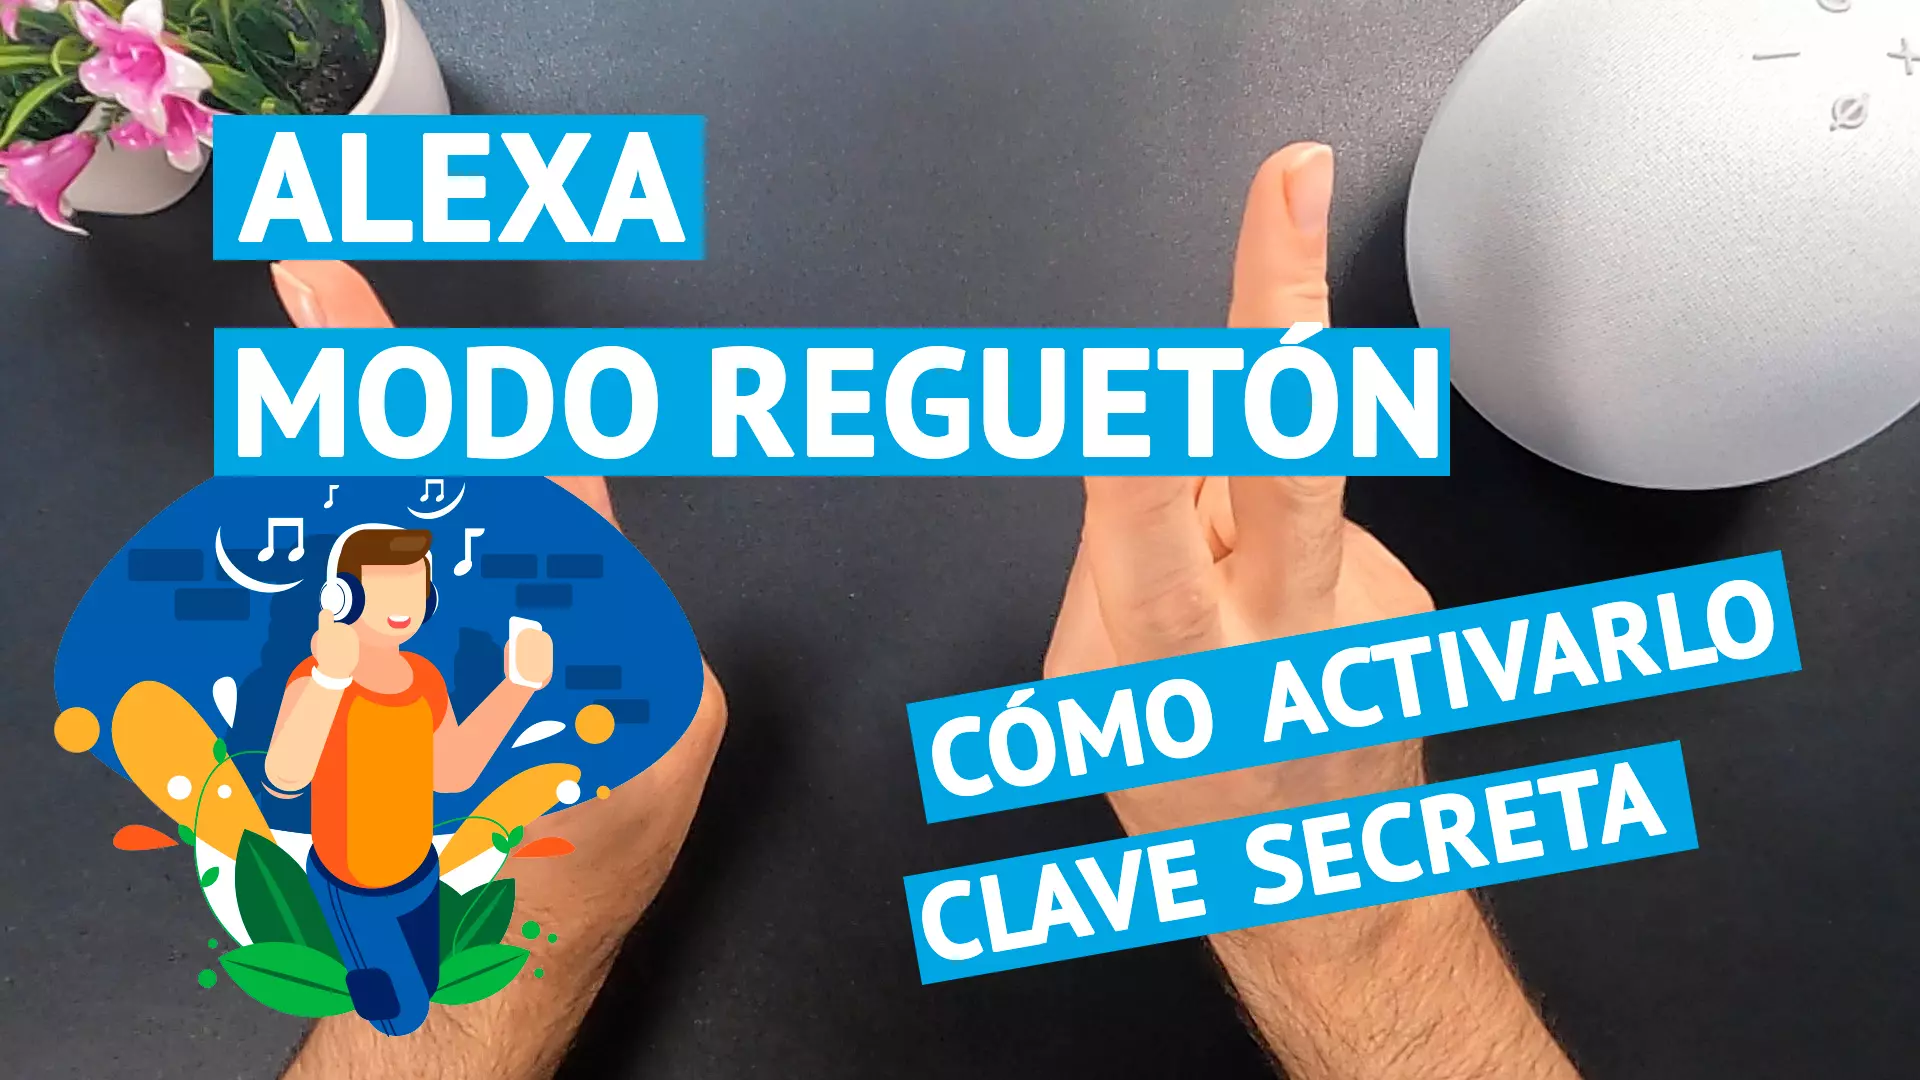 Alexa modo reguetón o reggaeton y cómo activarlo con el código secreto